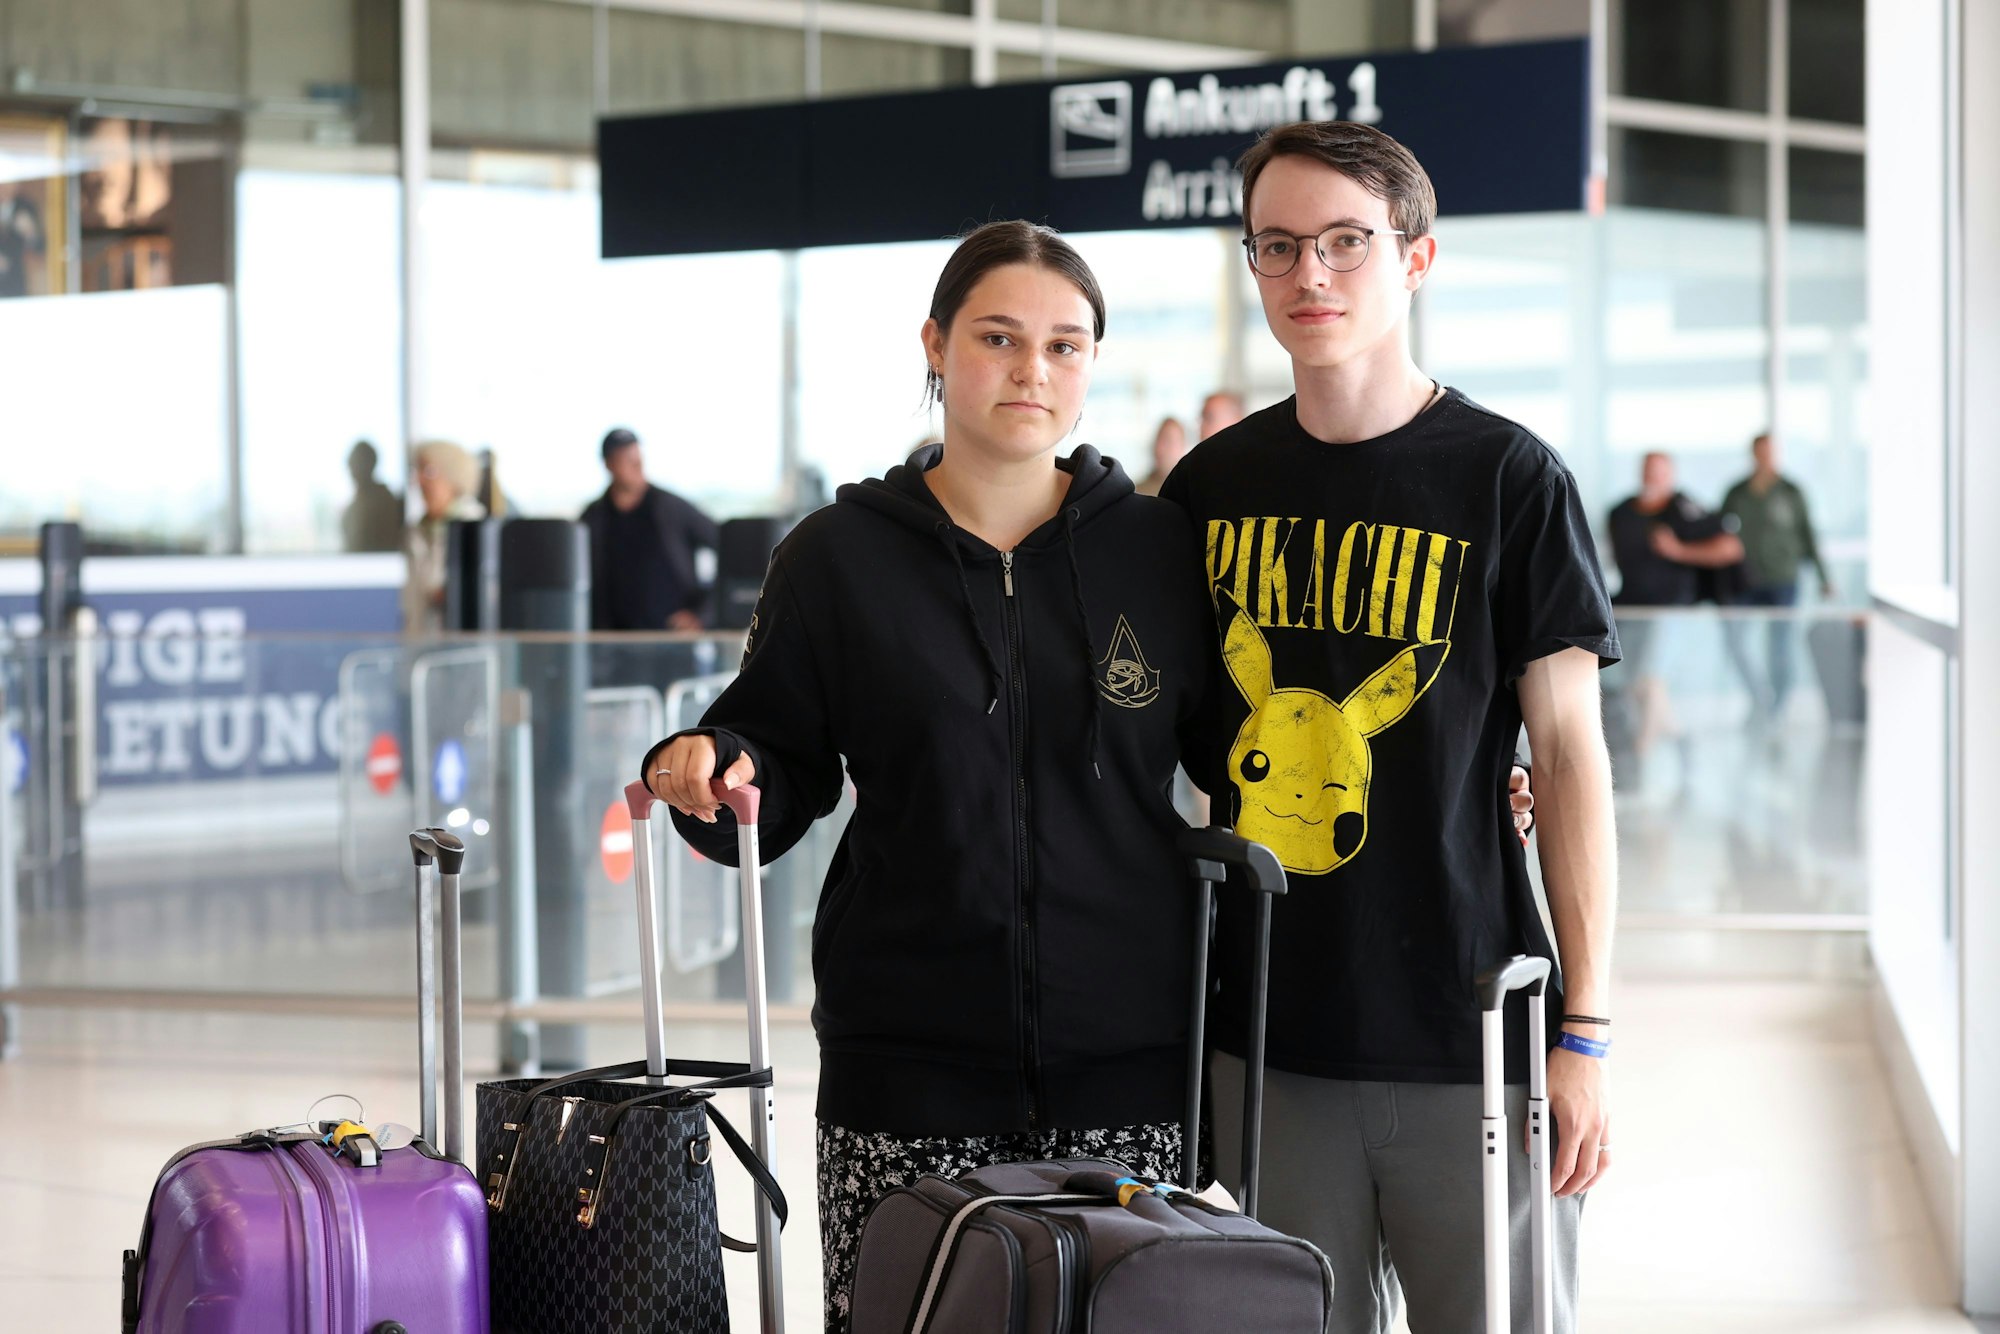 Vanessa Ewertz und Miguel Lexis
stehen am Ankunftsgate des Köln-Bonner Airports.